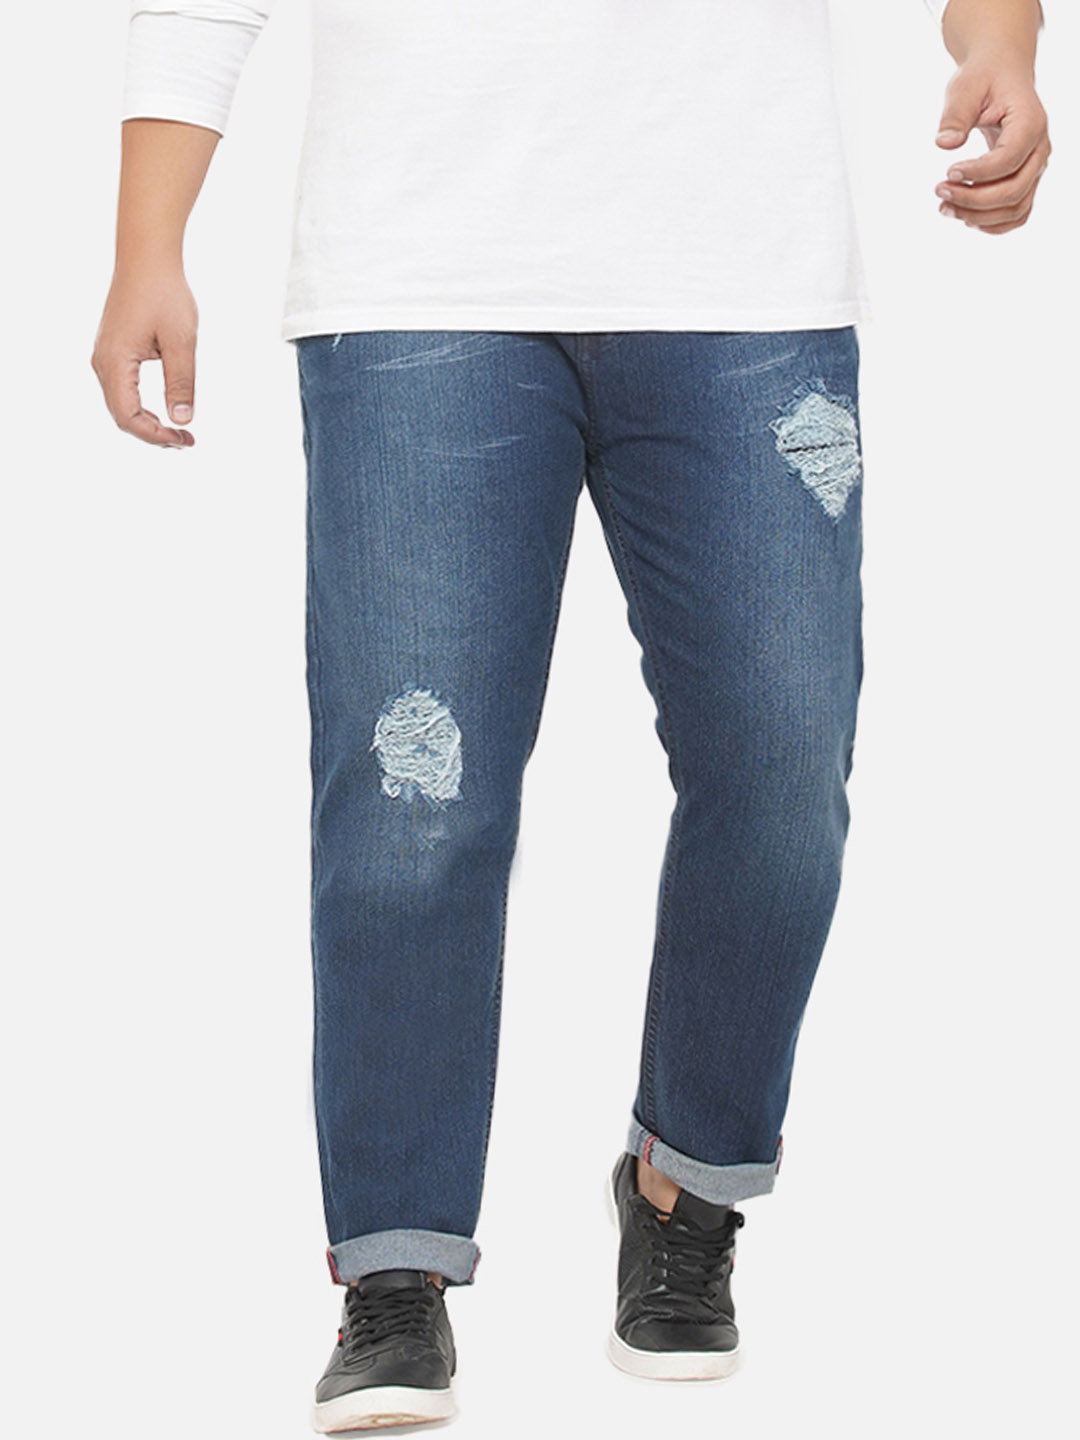 bottomwear/jeans/EJPJ25072/ejpj25072-1.jpg